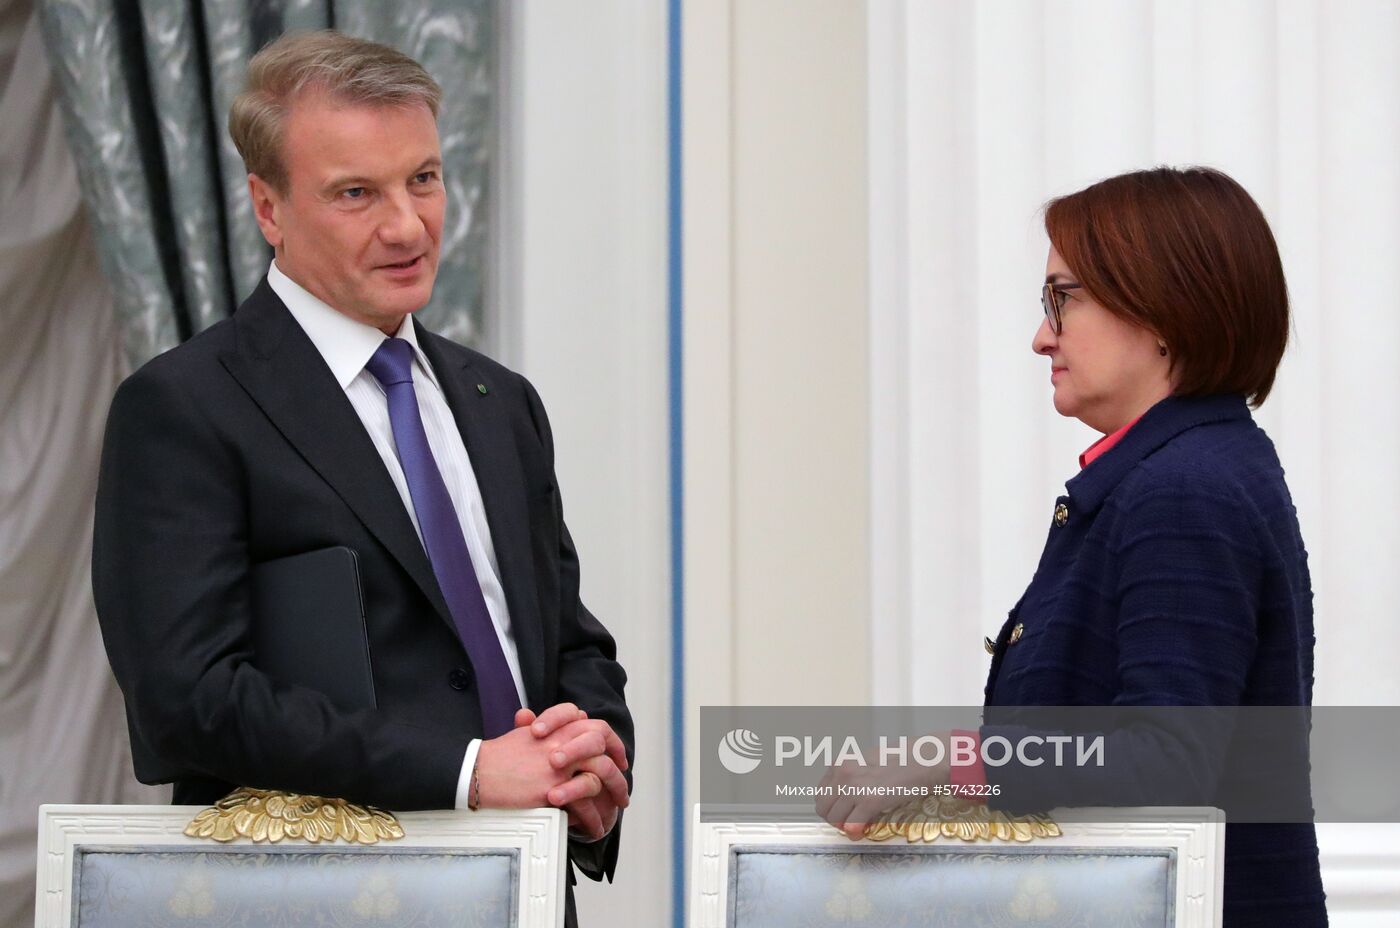 Президент РФ В. Путин провел встречу с представителями российских деловых кругов